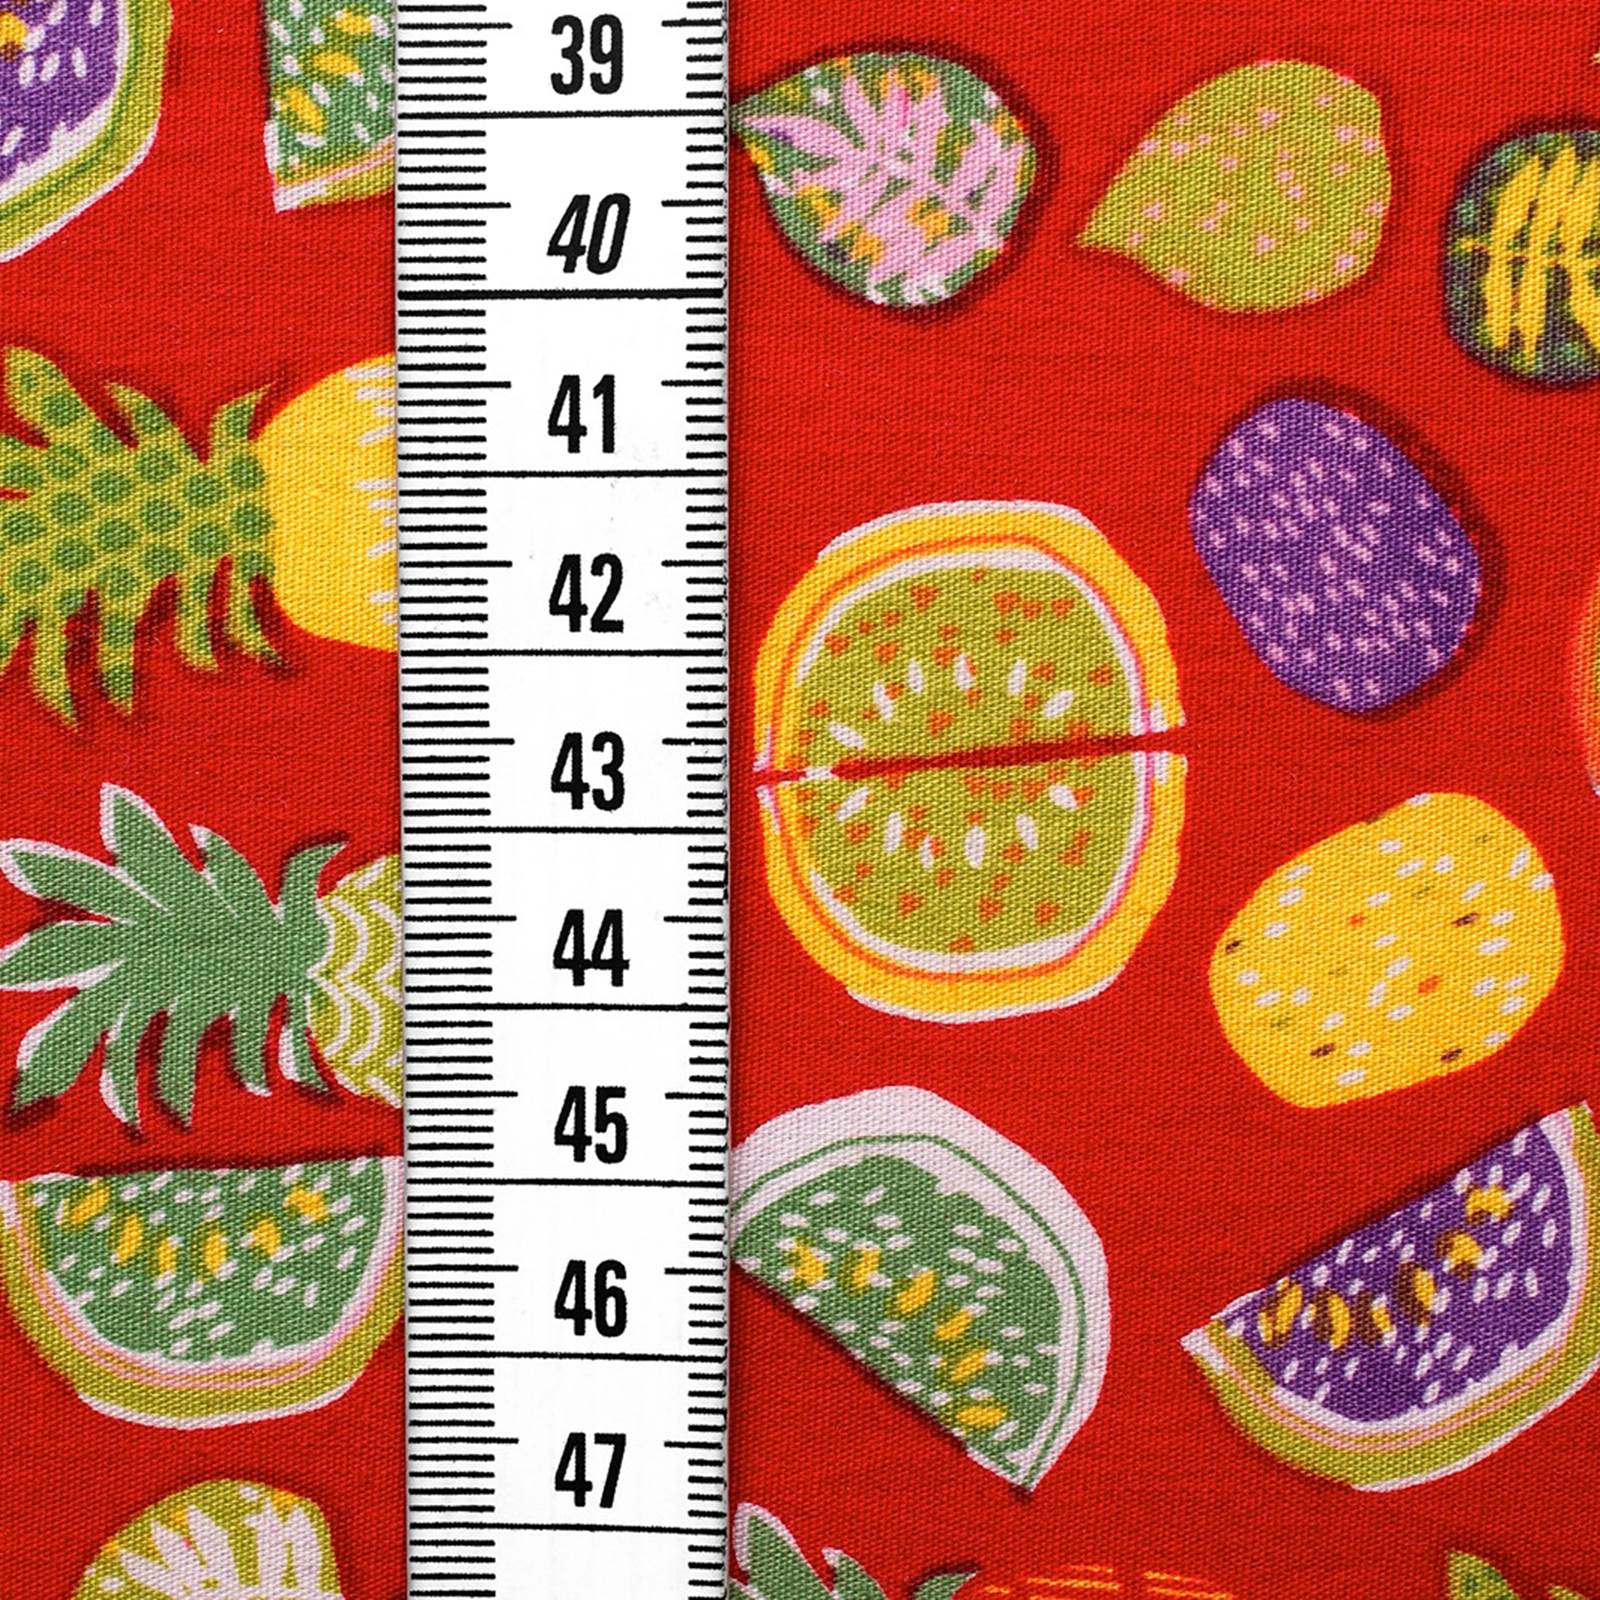 Exótico - Tela de algodón con diseño de frutas - rojo